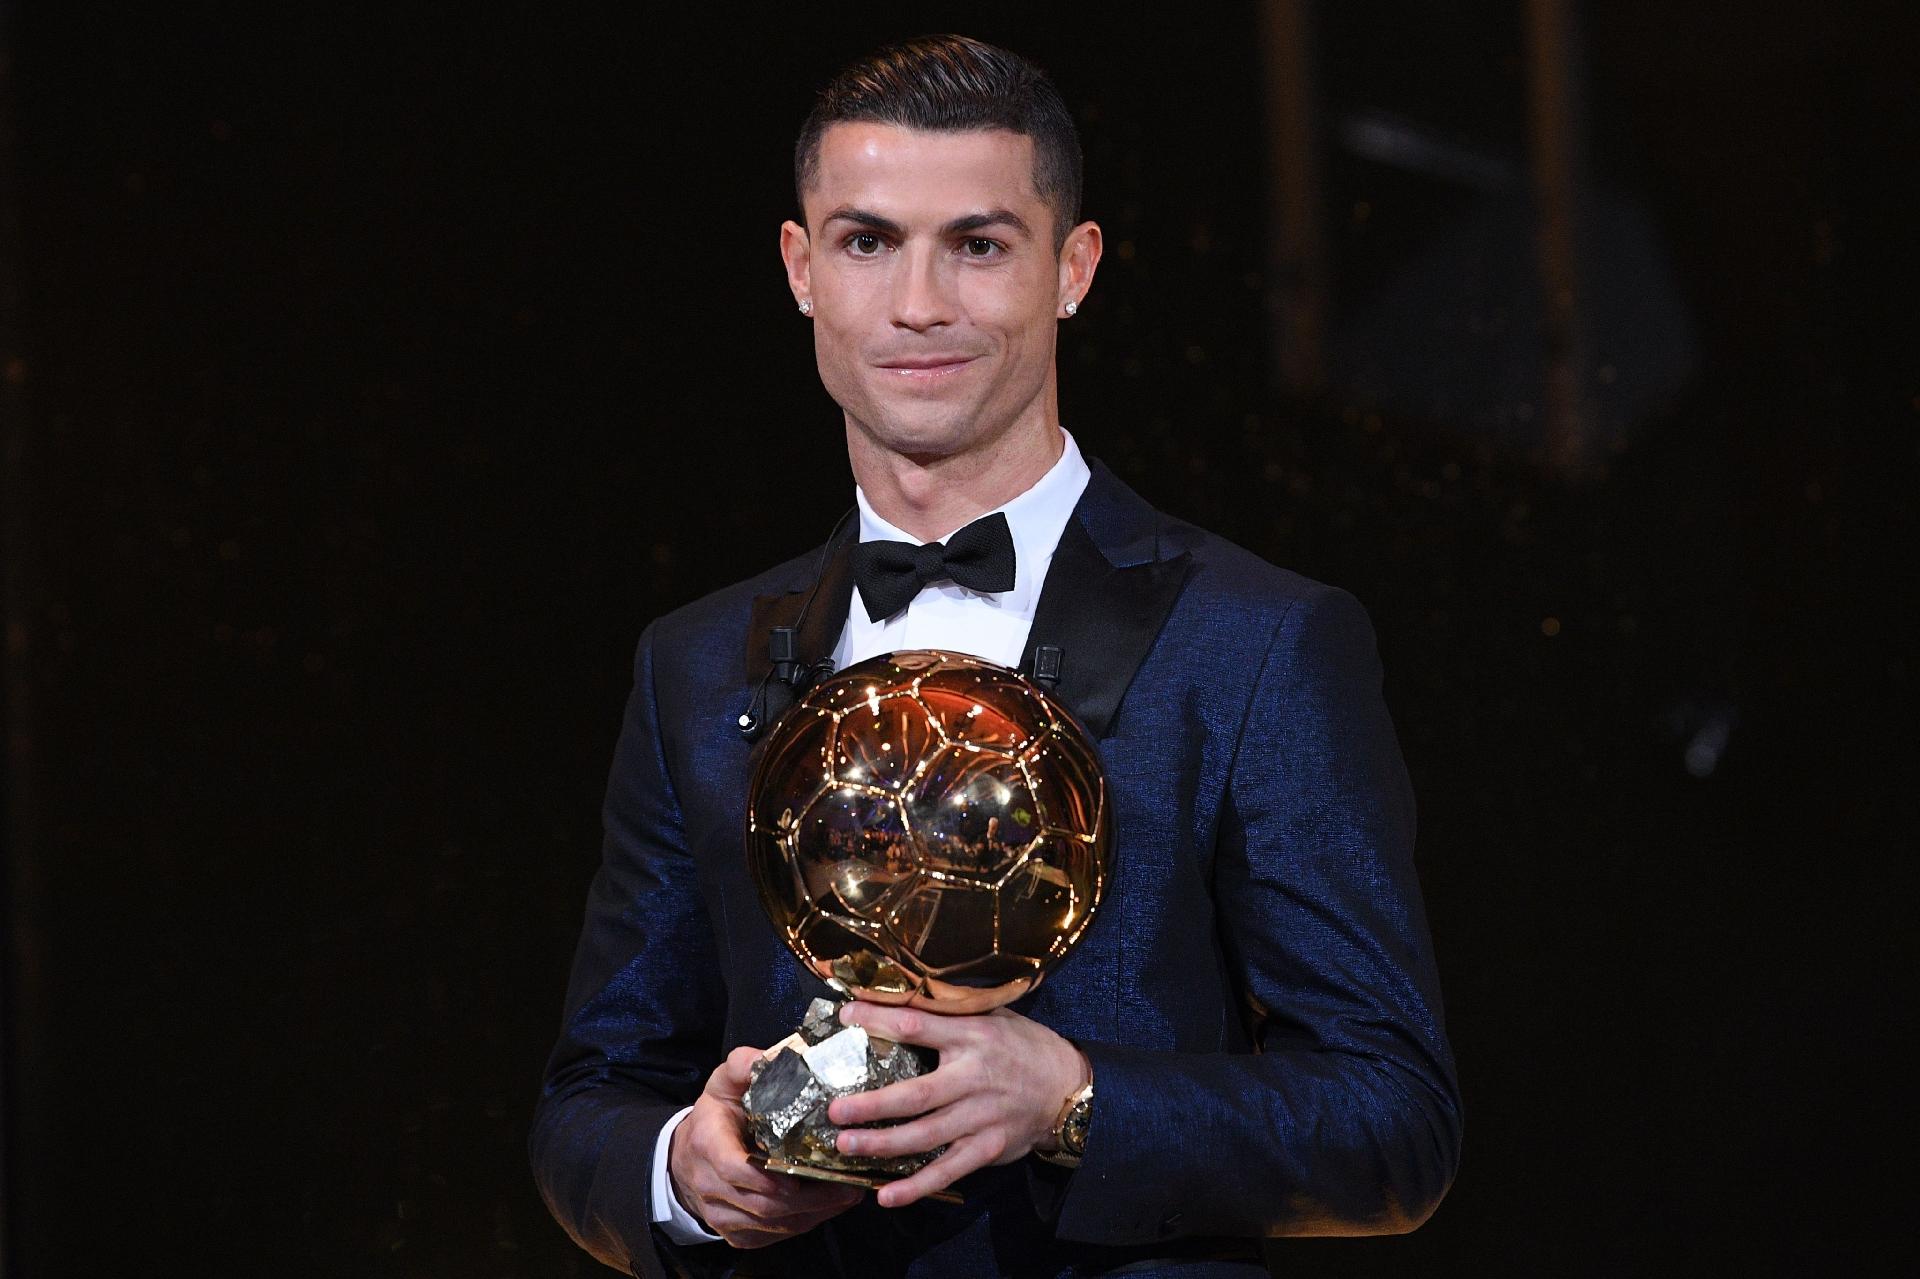 Ronaldo cobra R$ 6 milhões para emagrecer em programa de TV, diz